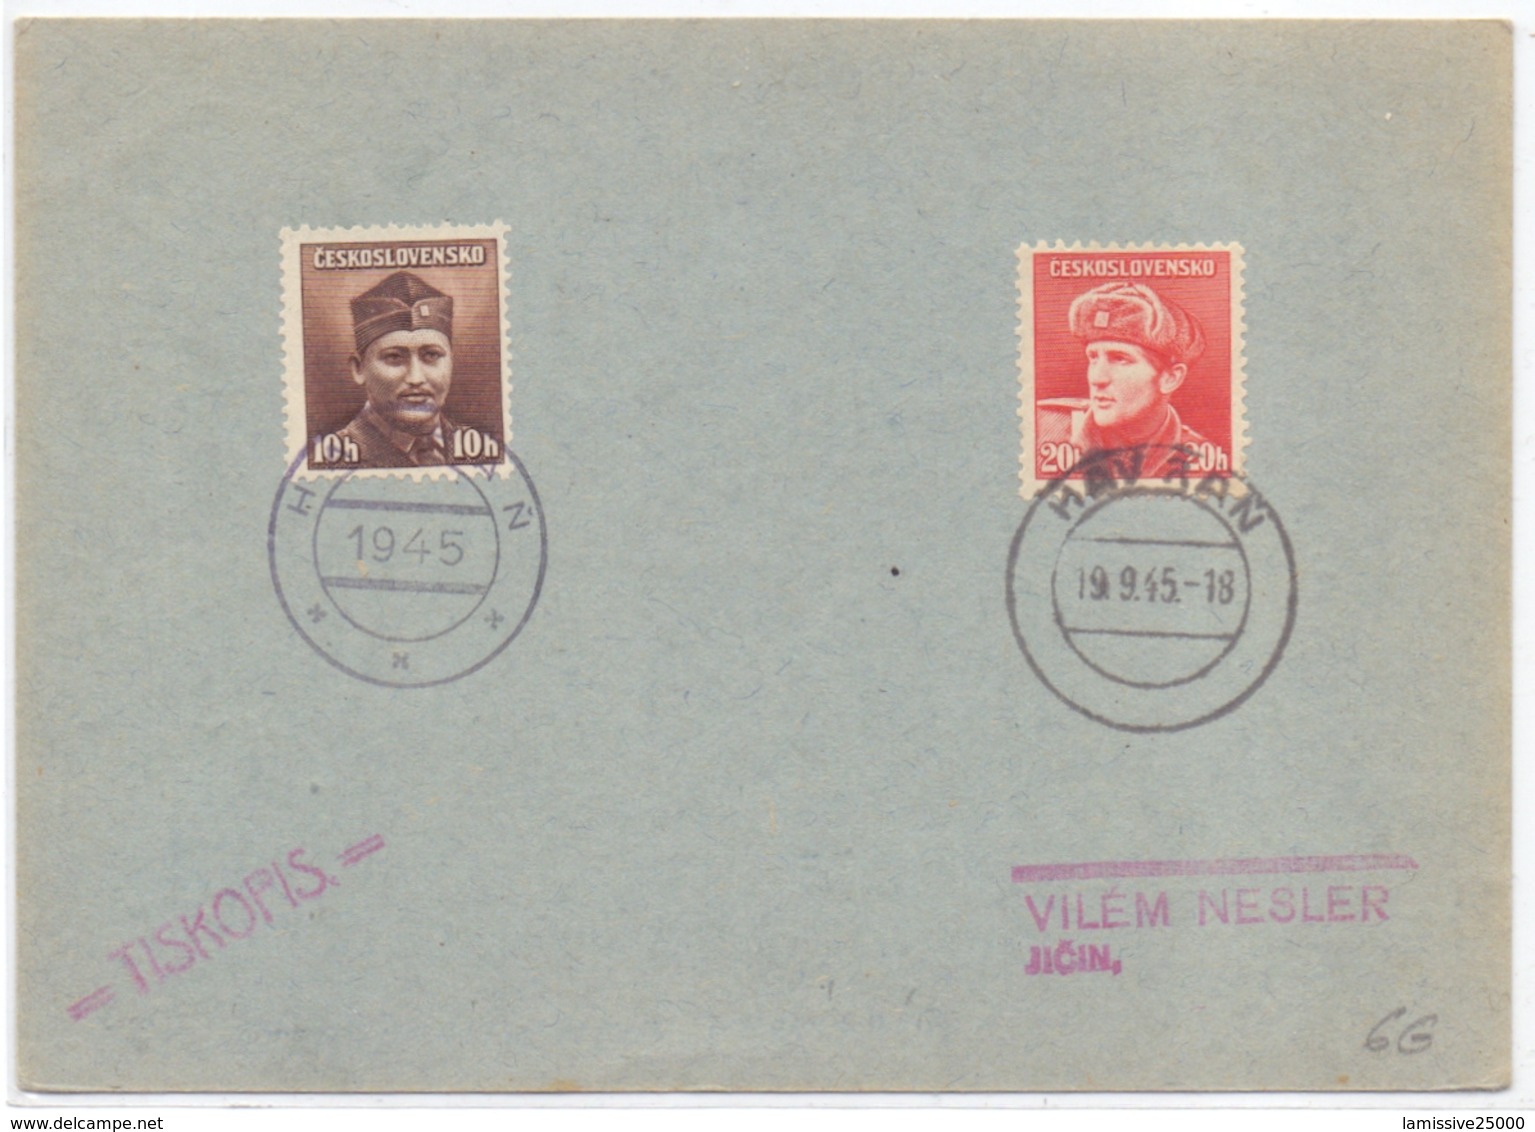 Tchecoslovaquie Carte Postale Avec Cachet Provisoir De La Liberation Havran - Brieven En Documenten